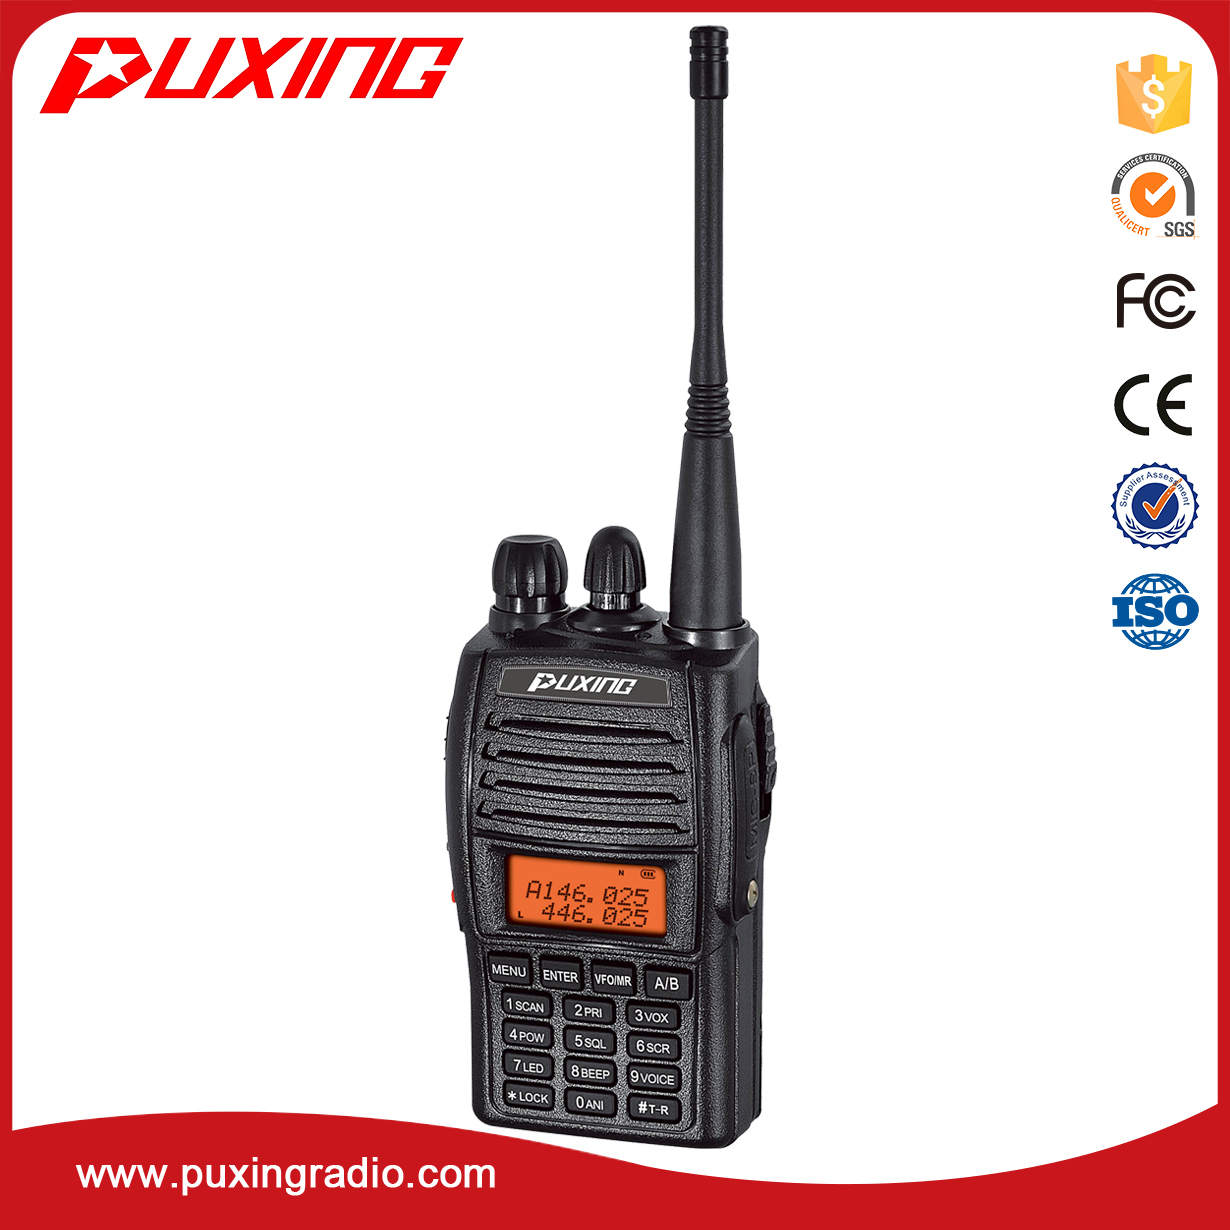 PX-UV973 dual band radio